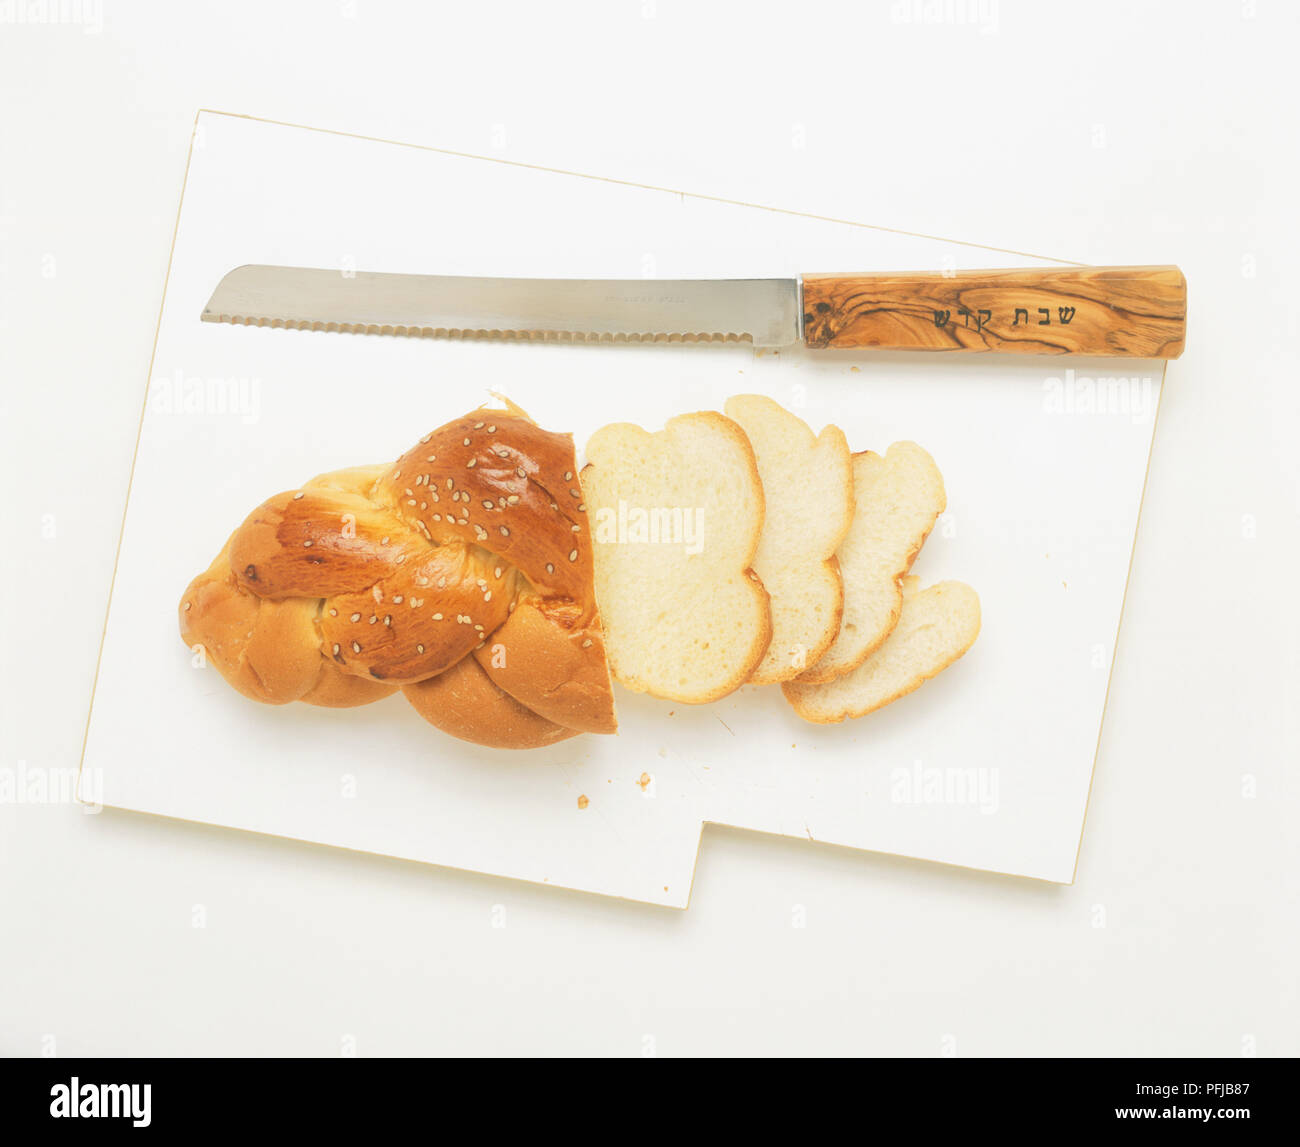 En partie en tranches de miche de pain challah Sabbat spécial avec le couteau à découper, vue d'en haut Banque D'Images